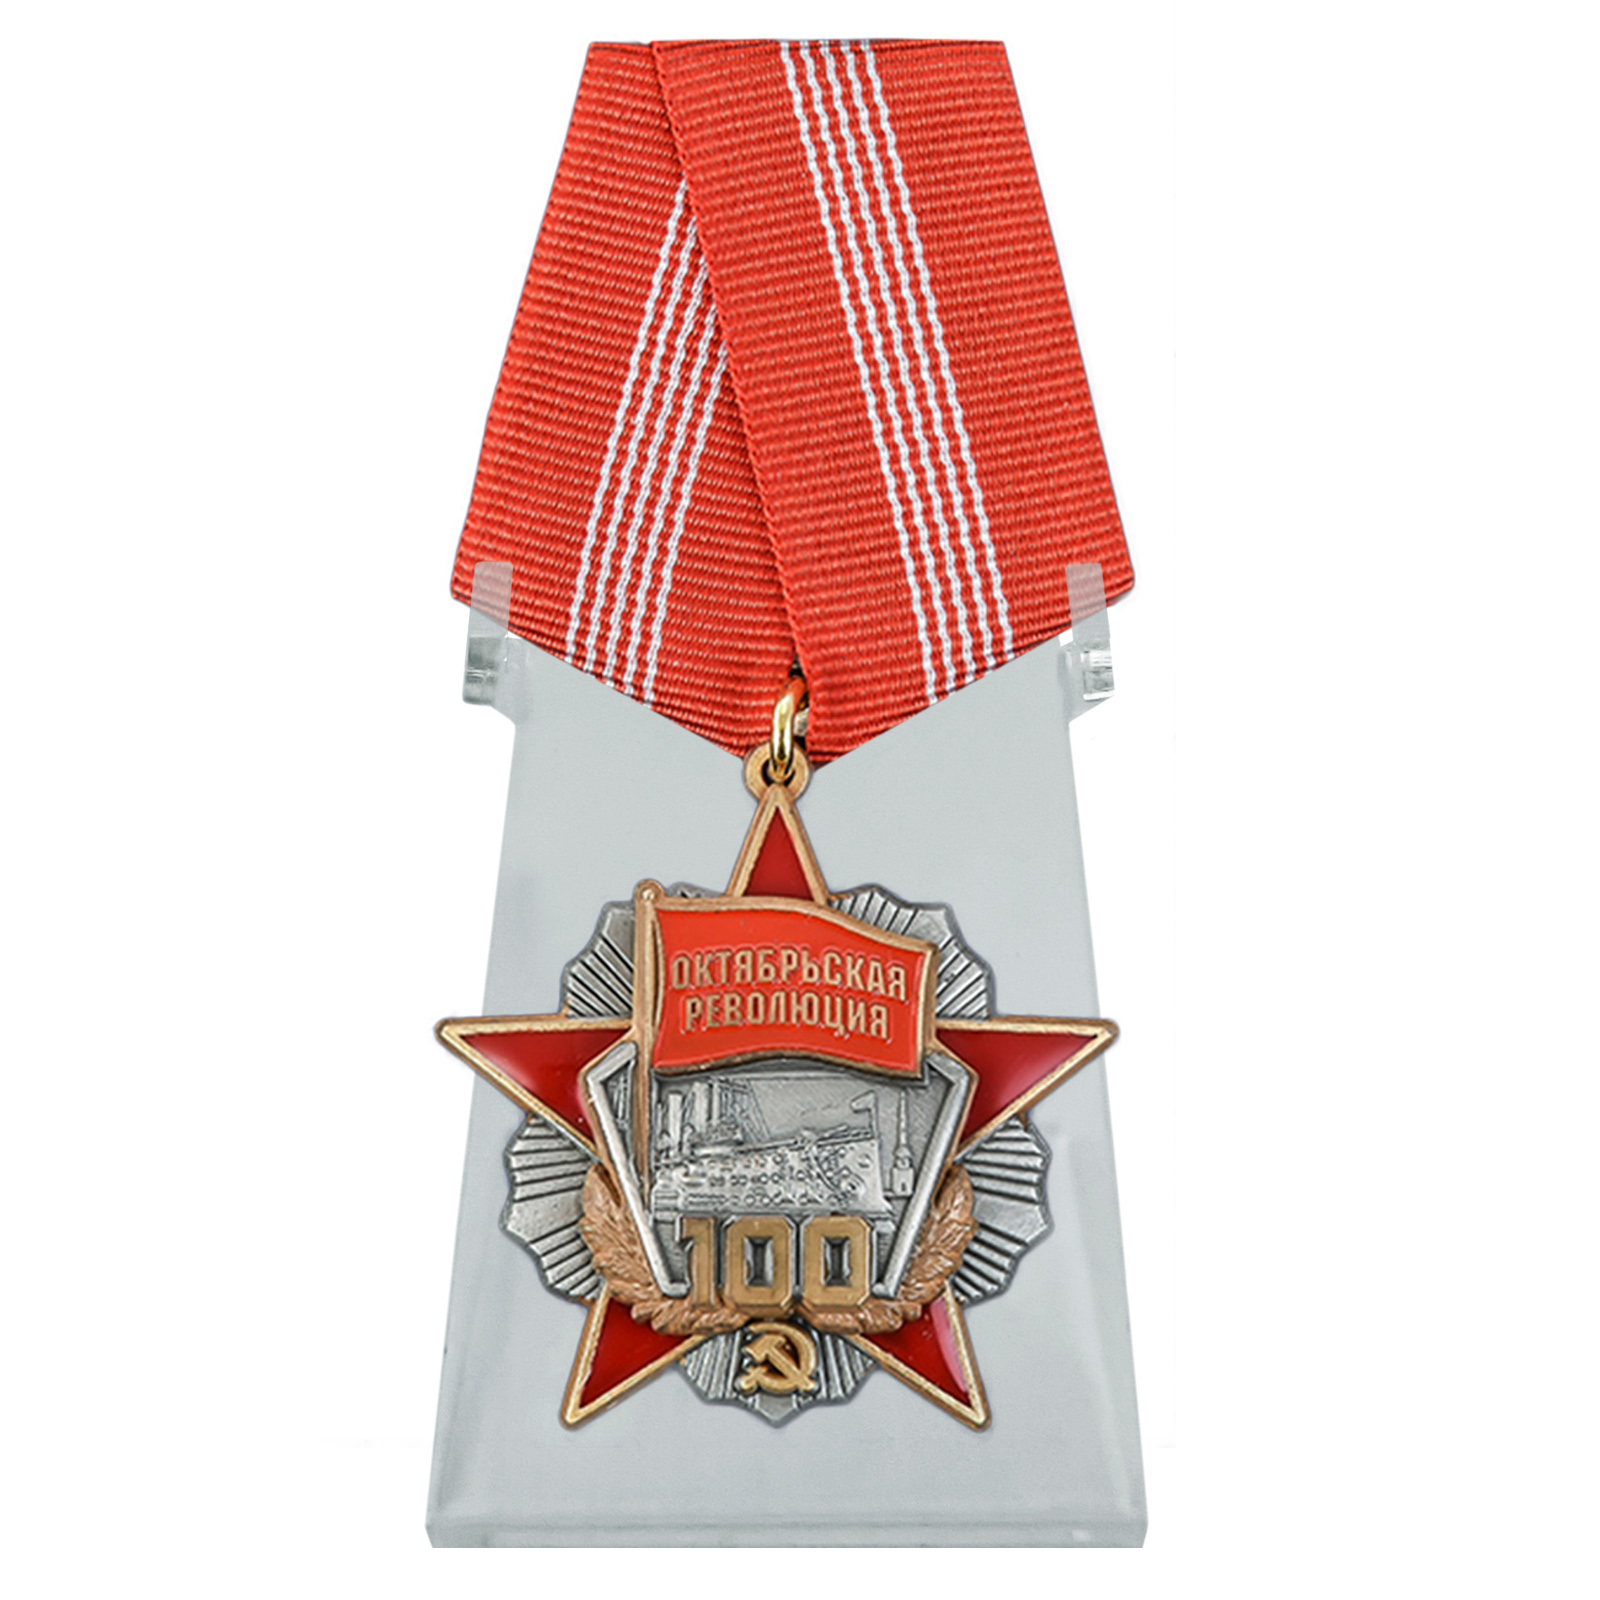 Медаль "Октябрьская Революция 100 лет" на подставке